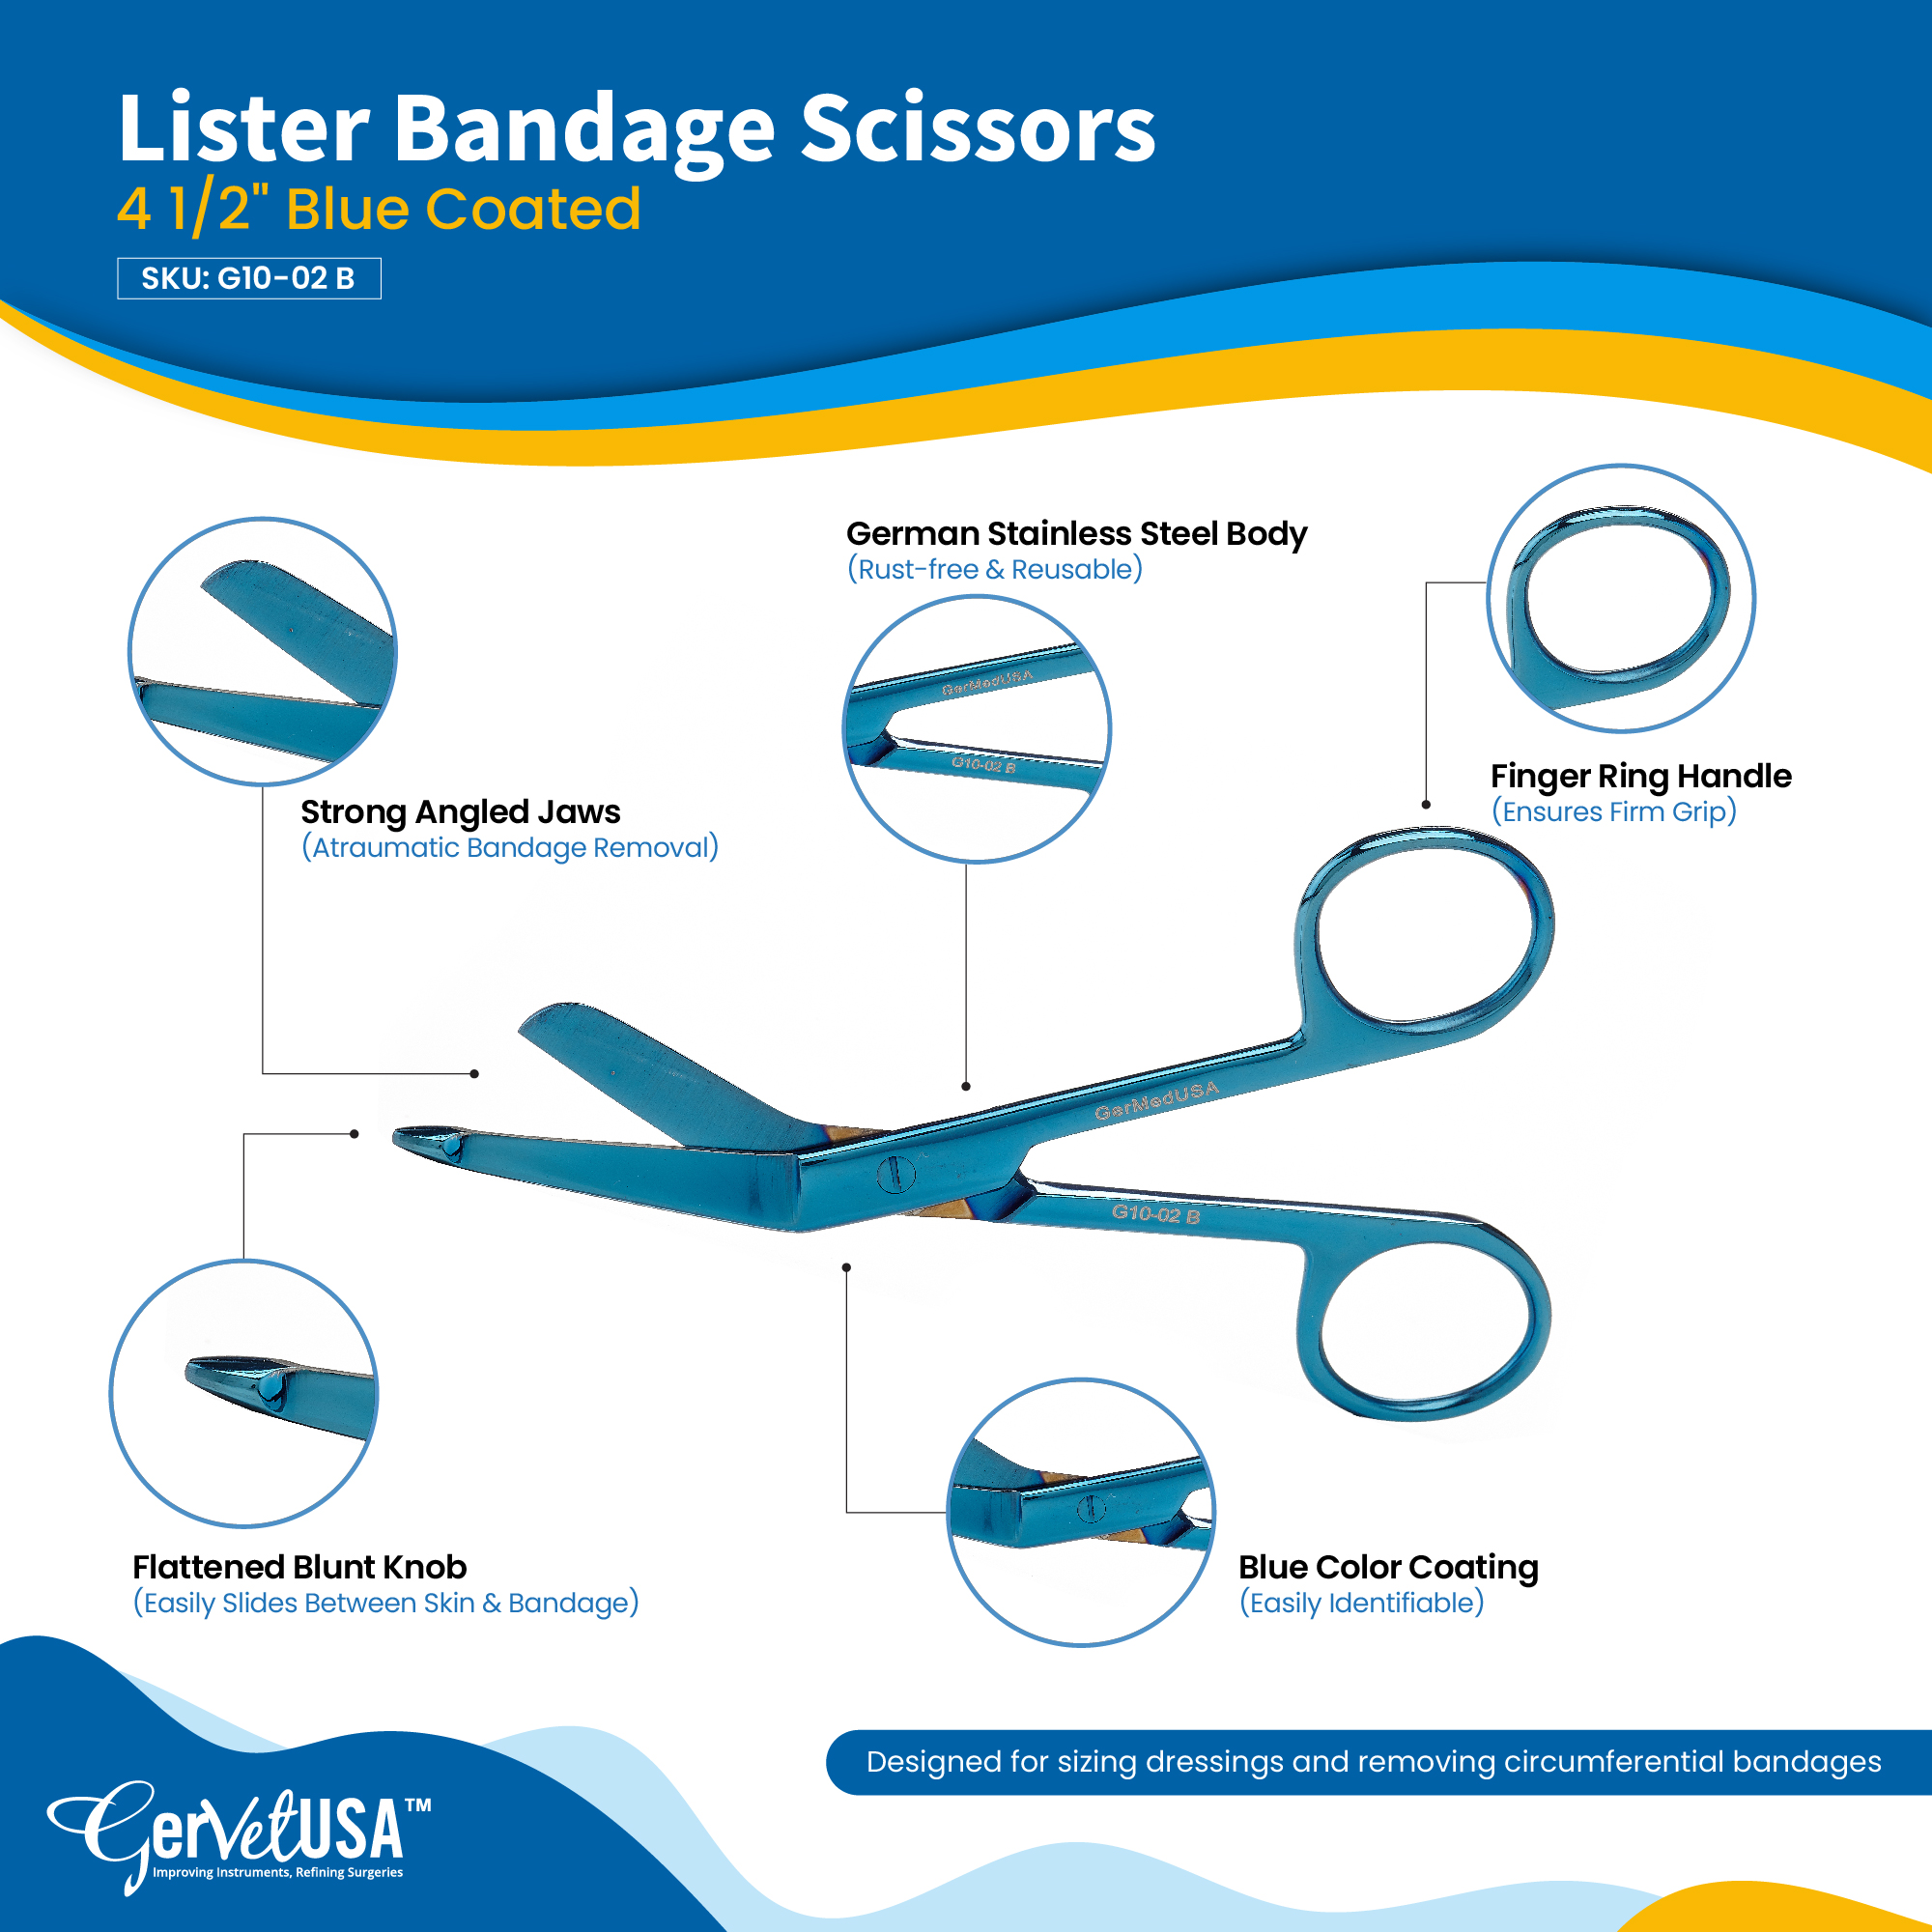 https://www.gervetusa.com/up_data/products/images/lister-bandage-scissors-4-12-color-coated-lister-bandage-scissors-4-12-color-coated-1654700325-.jpg